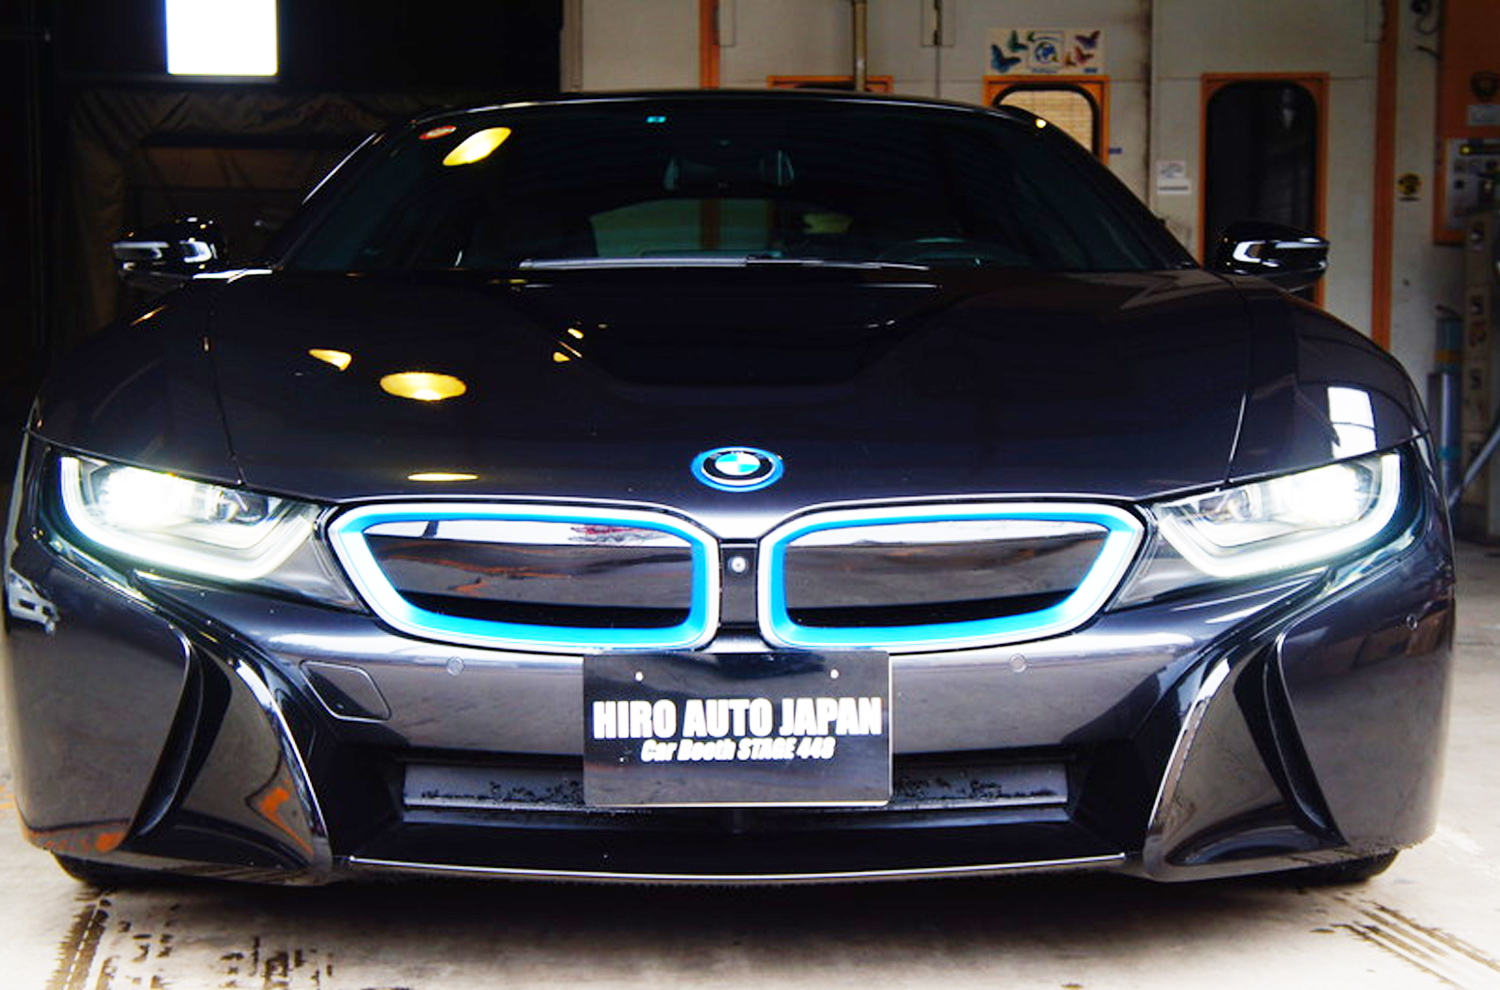 BMW鈑金塗装